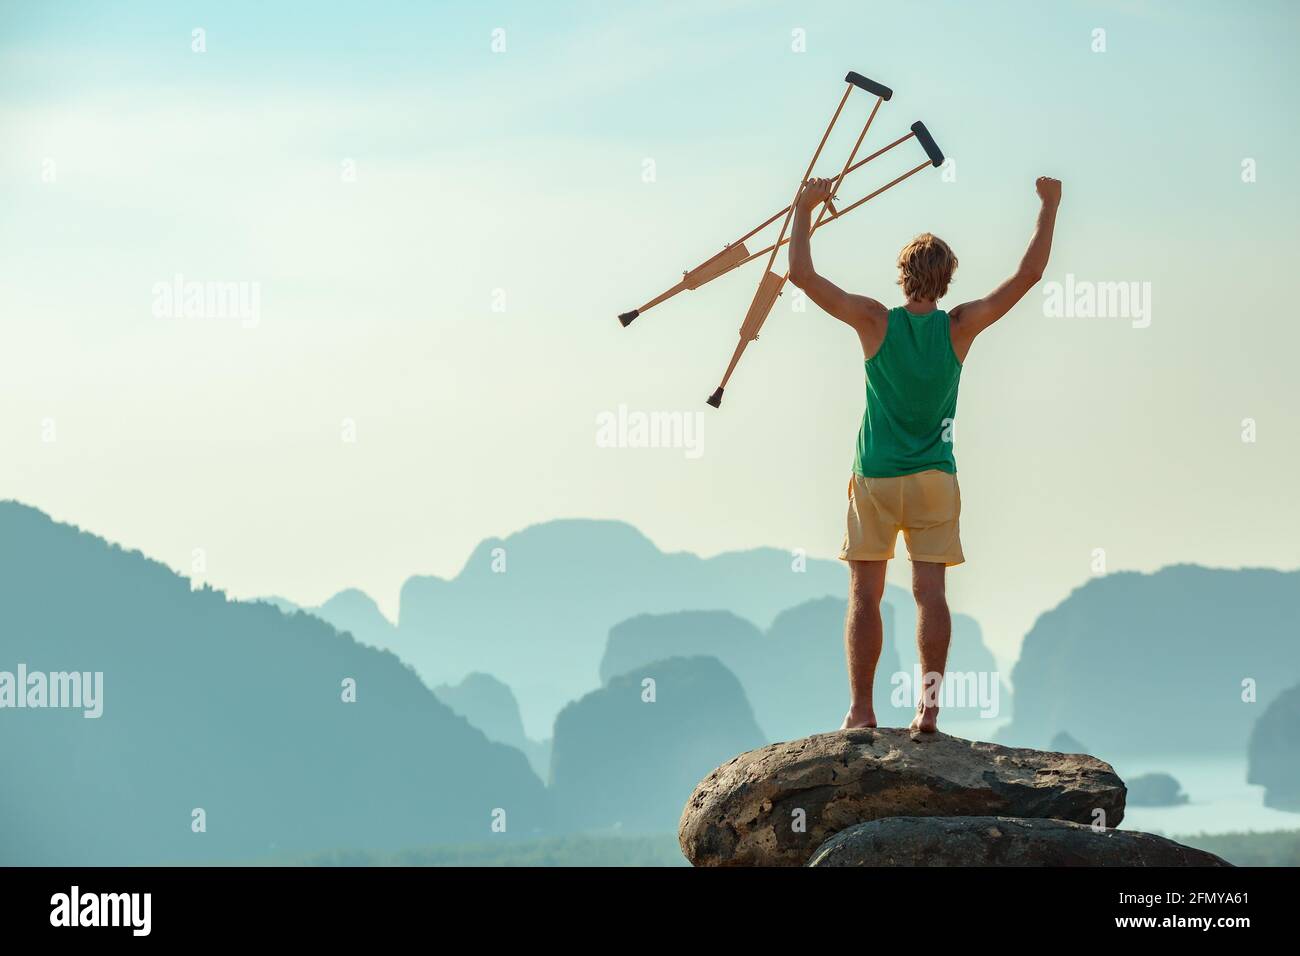 L'homme handicapé se tient sur le grand rocher dans la posture du gagnant et regarde la mer et les montagnes. Concept de soins de santé ou d'assurance Banque D'Images